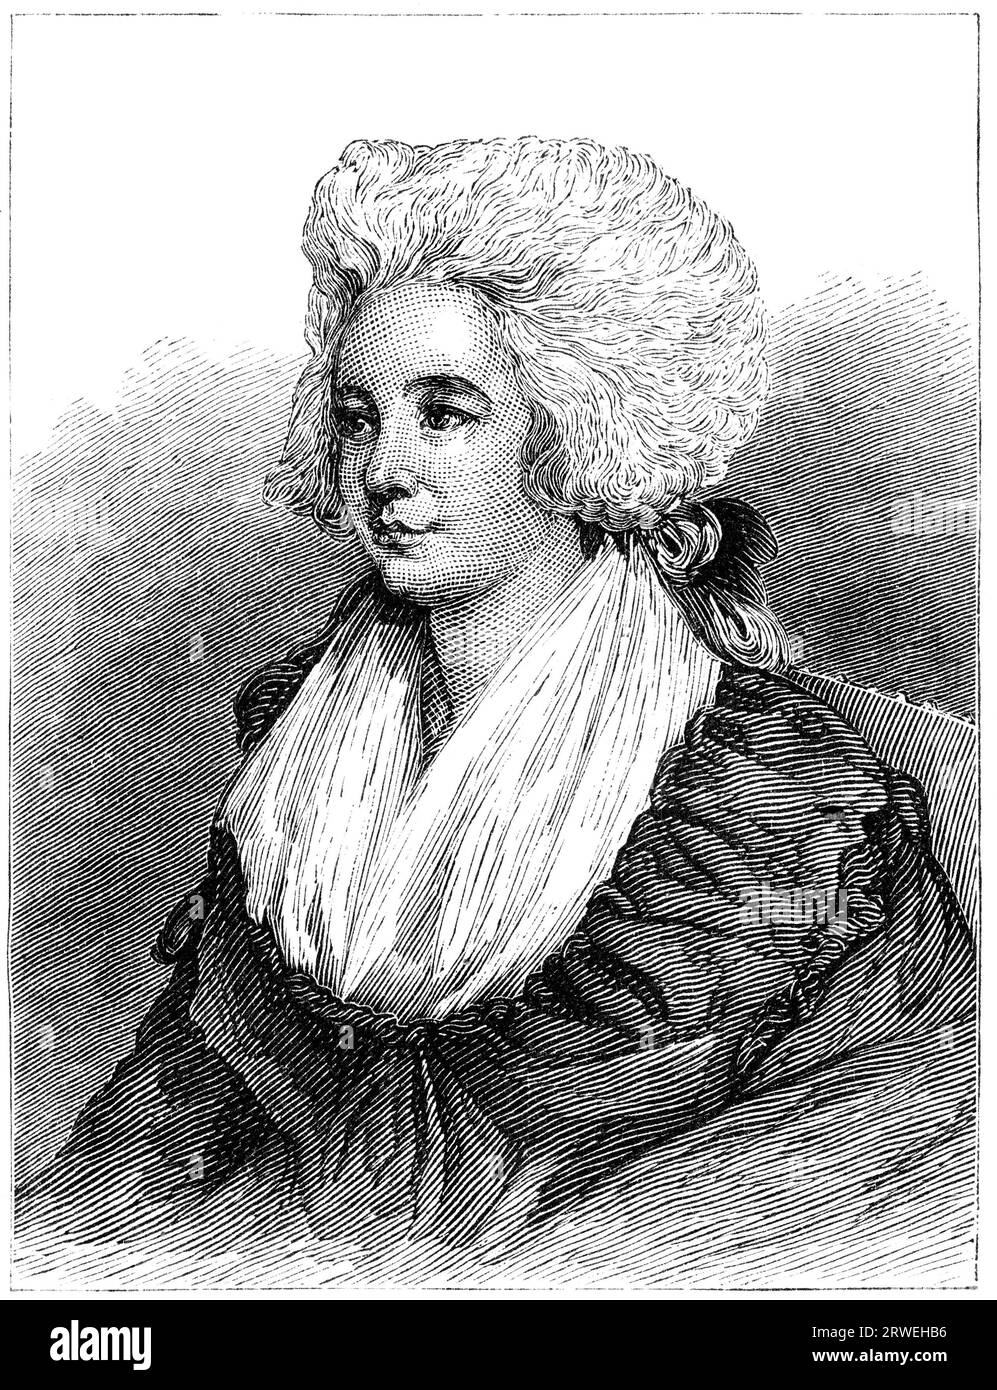 Hannah More (2. Februar 1745 ? 7. September 1833) war ein britischer religiöser Schriftsteller, Romantiker und Philanthrop. Gravur eines Magazins aus dem Jahr 1876 Stockfoto